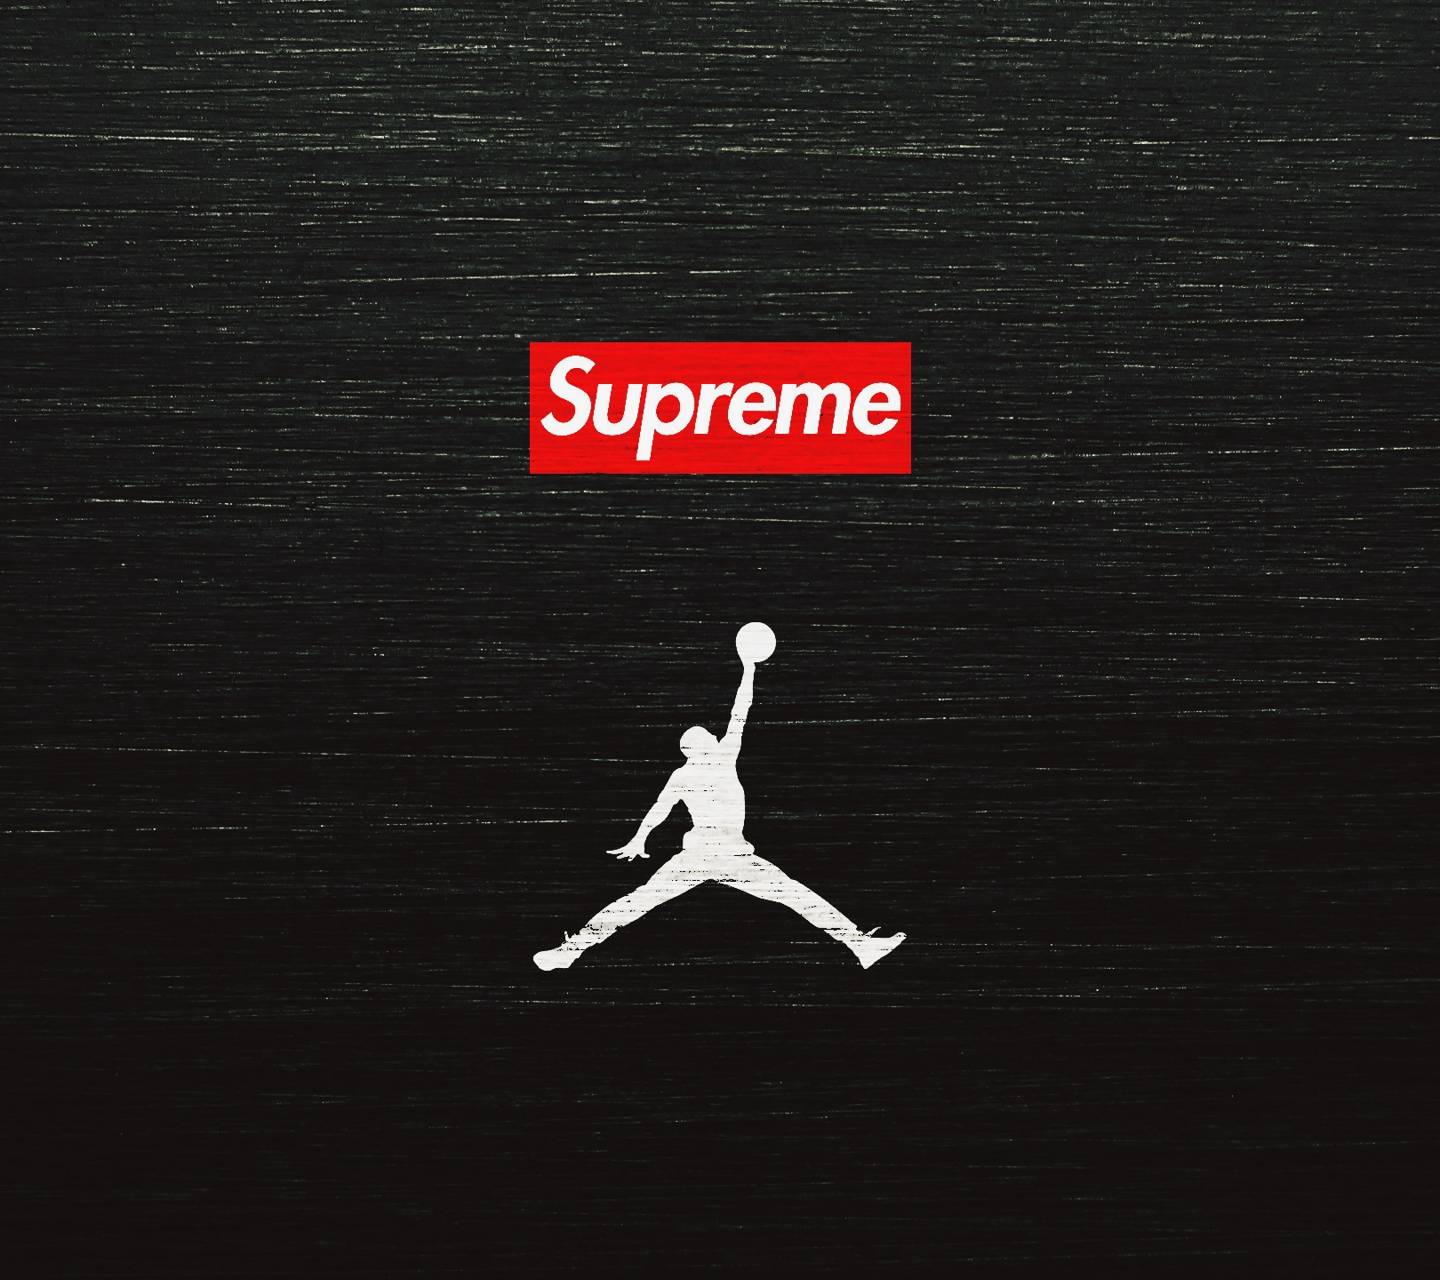 Supreme x Air Jordan Wallpaper